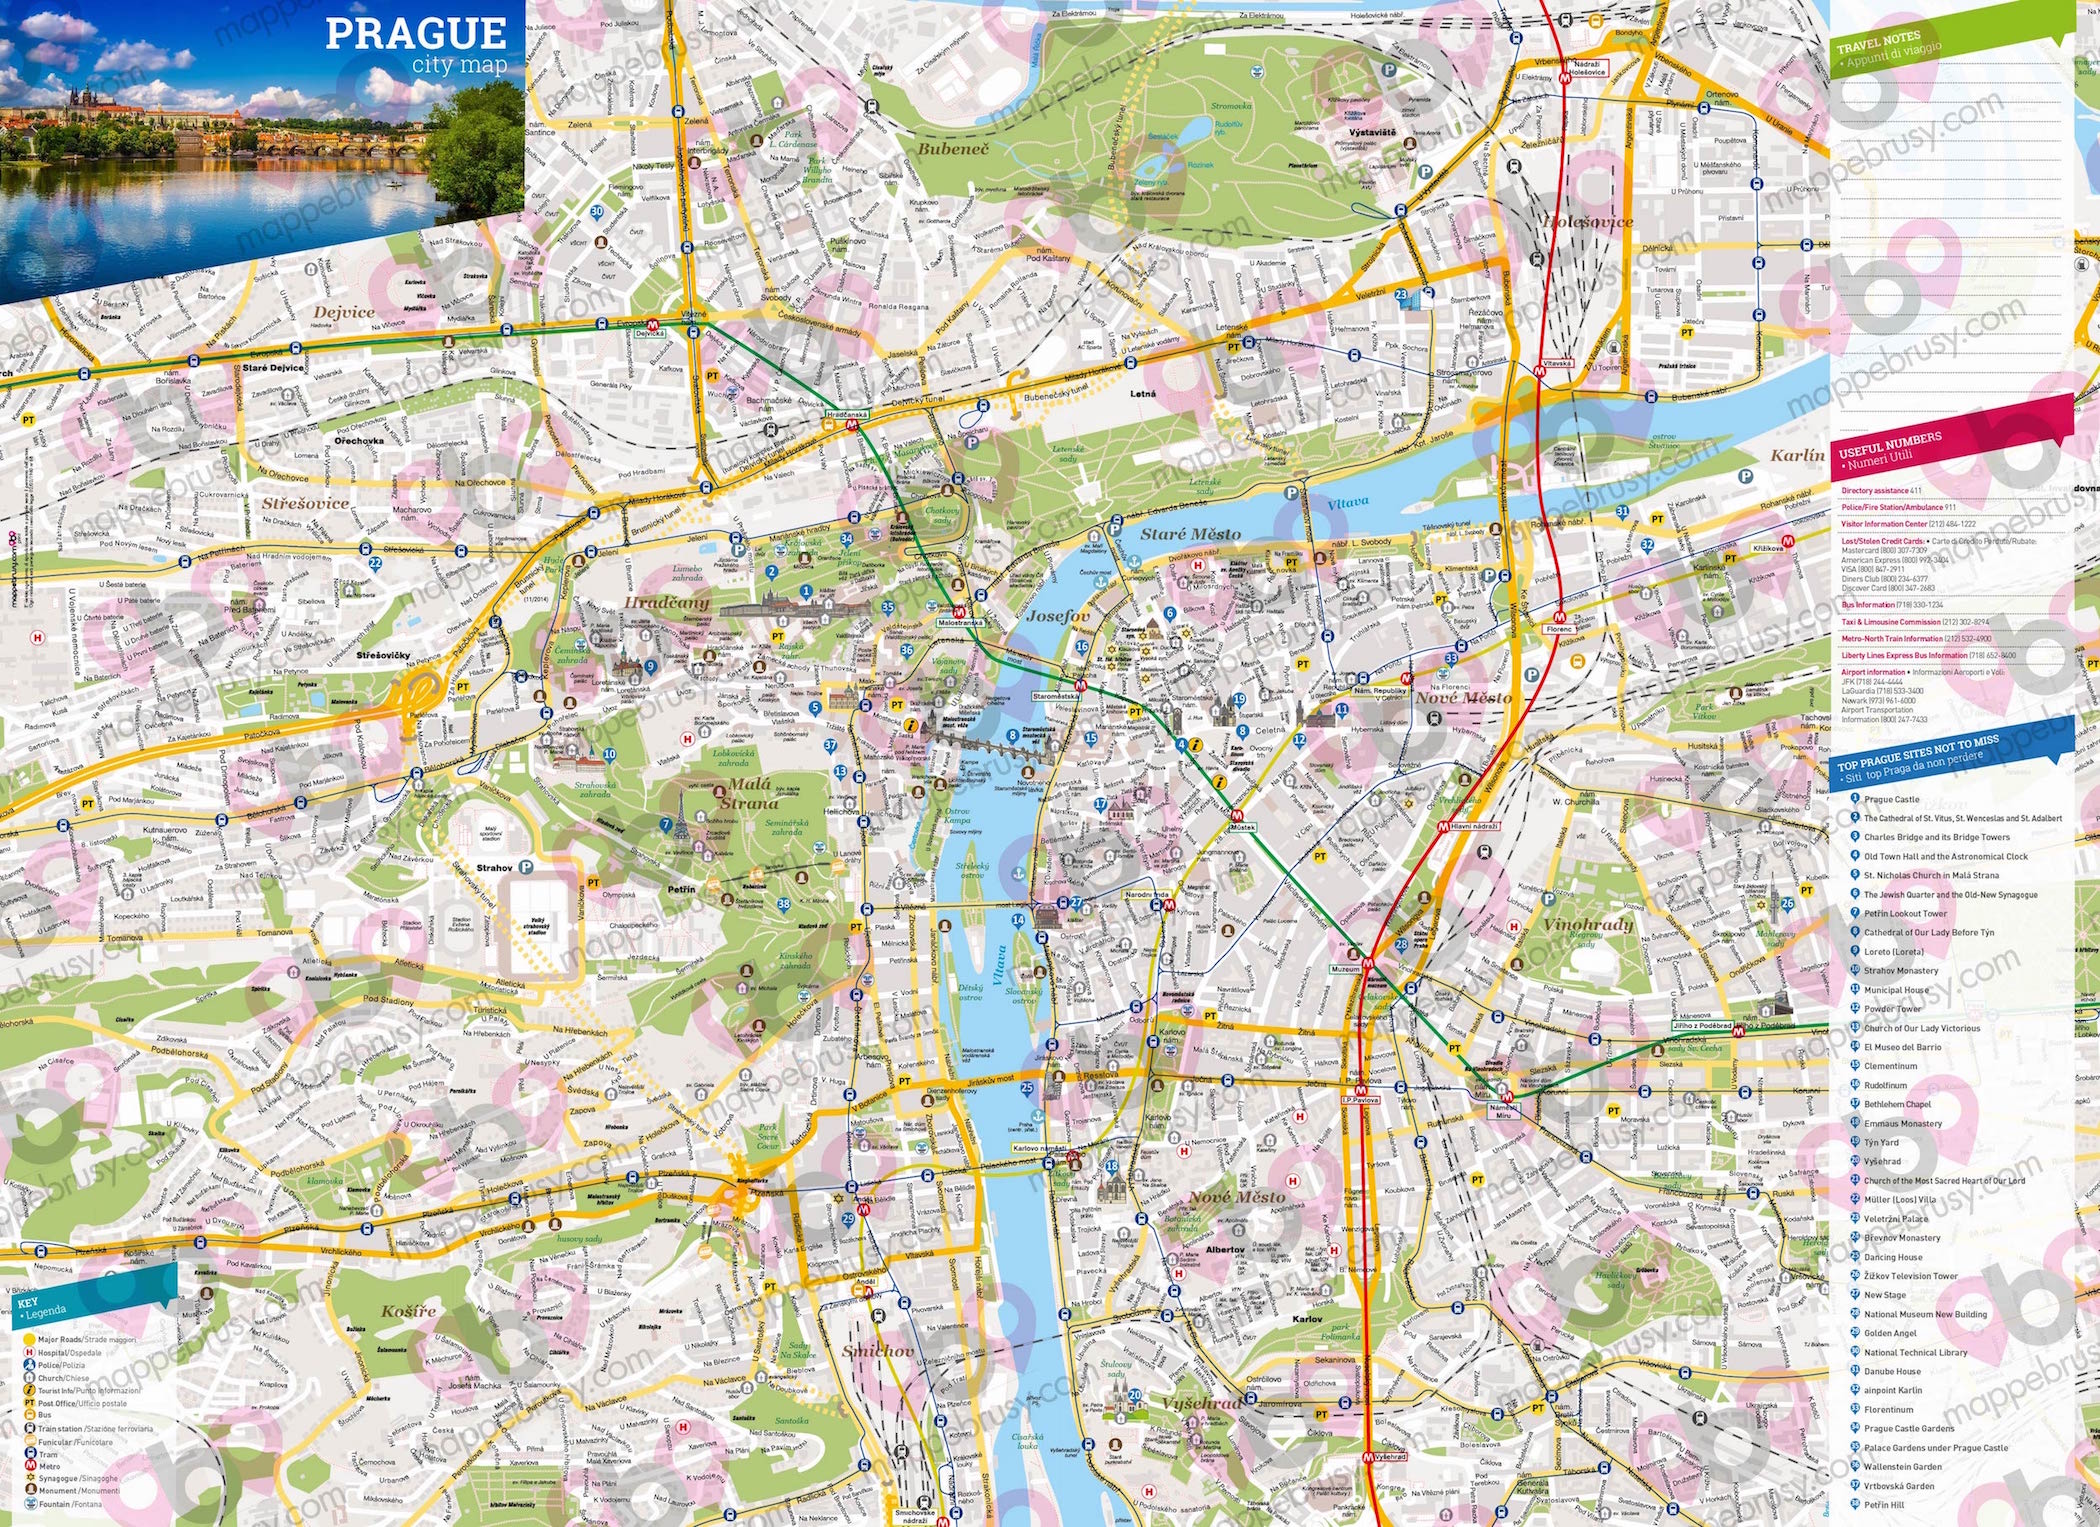 Mappa di Praga - Praga city map - mappa Praga - mappa personalizzata di Praga - mappa tursitica di Praga